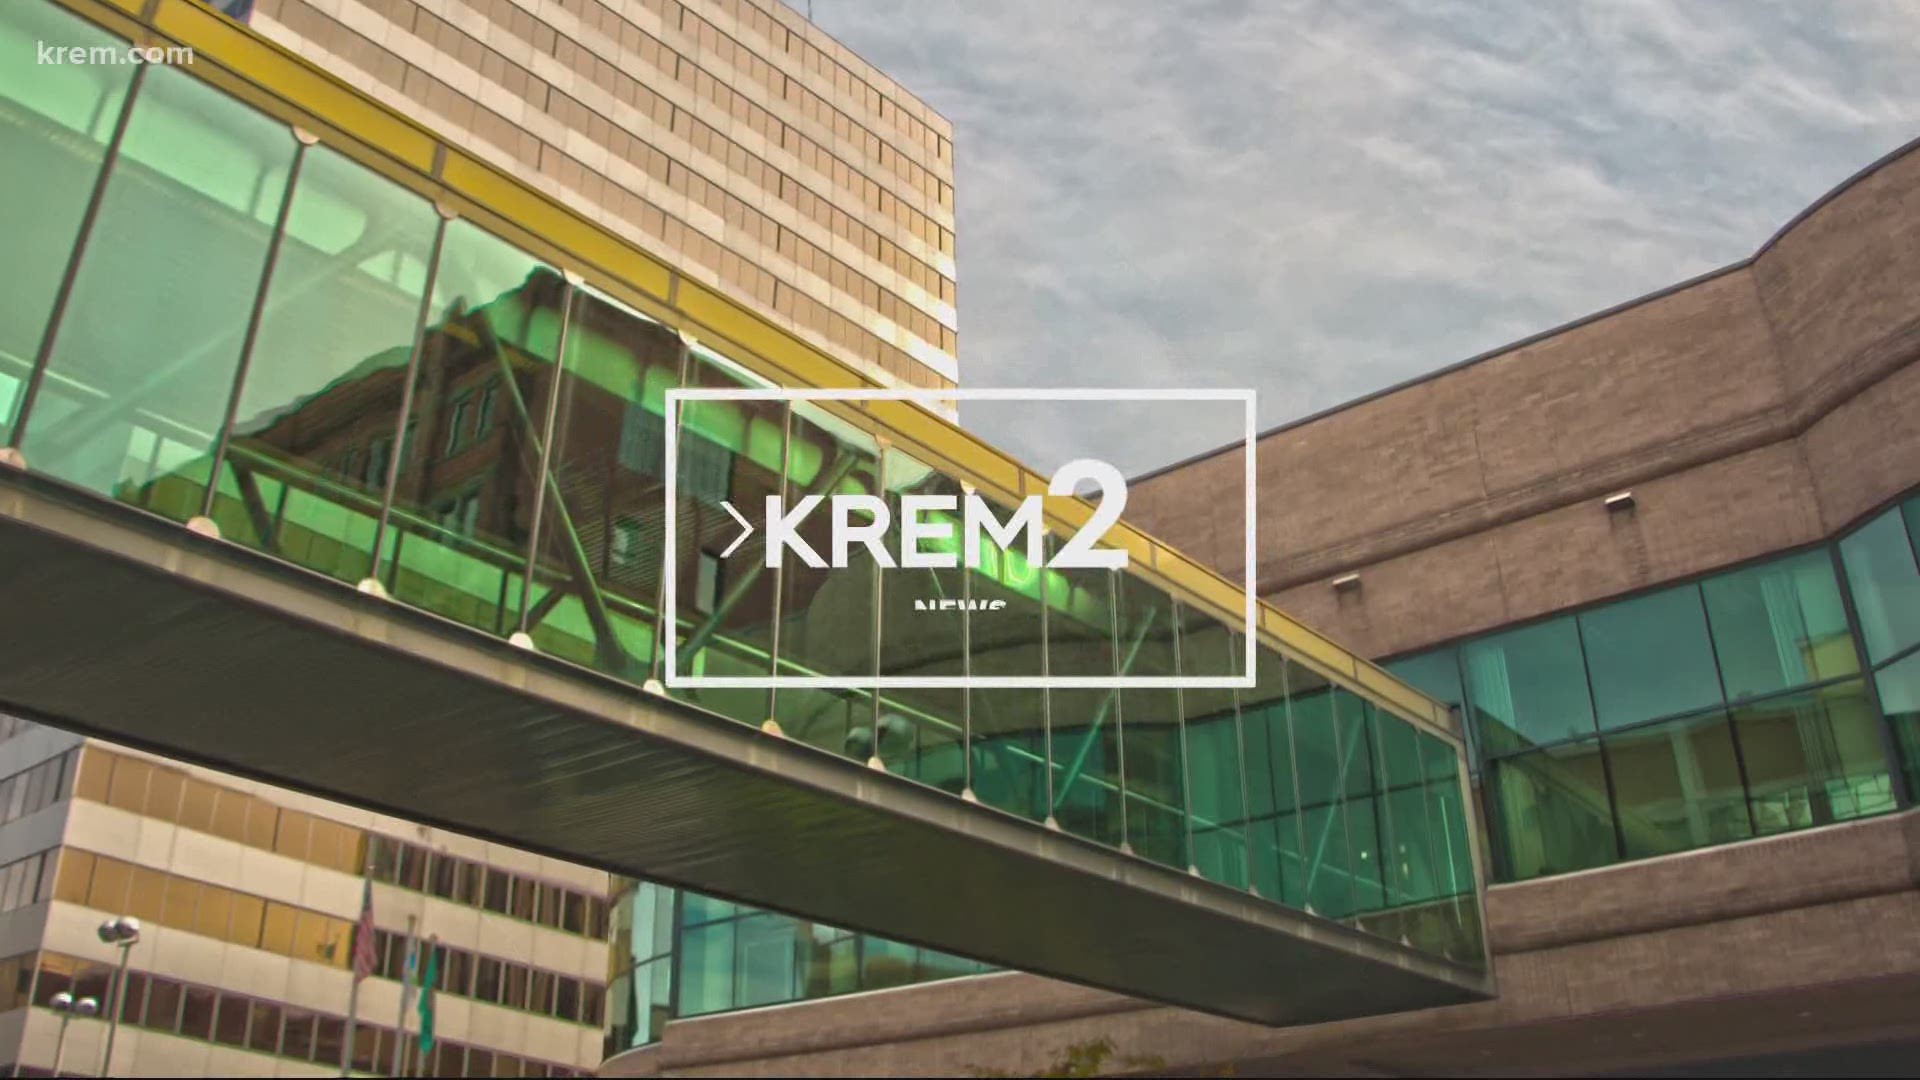 KREM 2 News headlines at 6 p.m. on July 30, 2020.